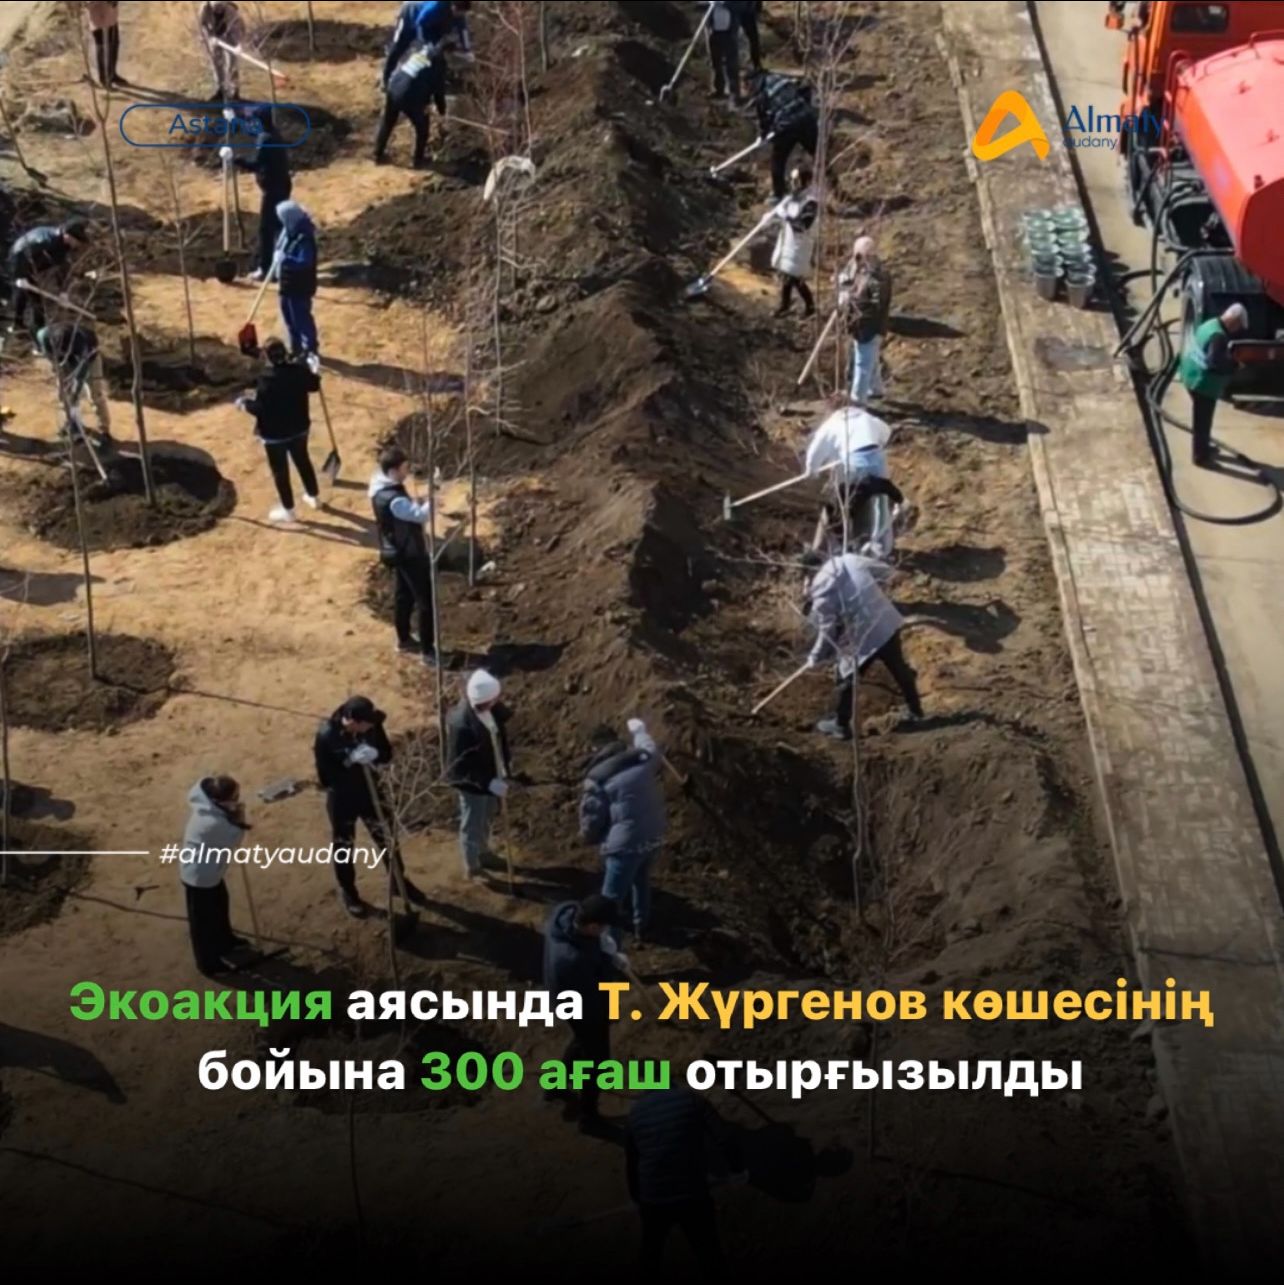 В рамках акции по улице Т. Жургенова посажено 300 деревьев.